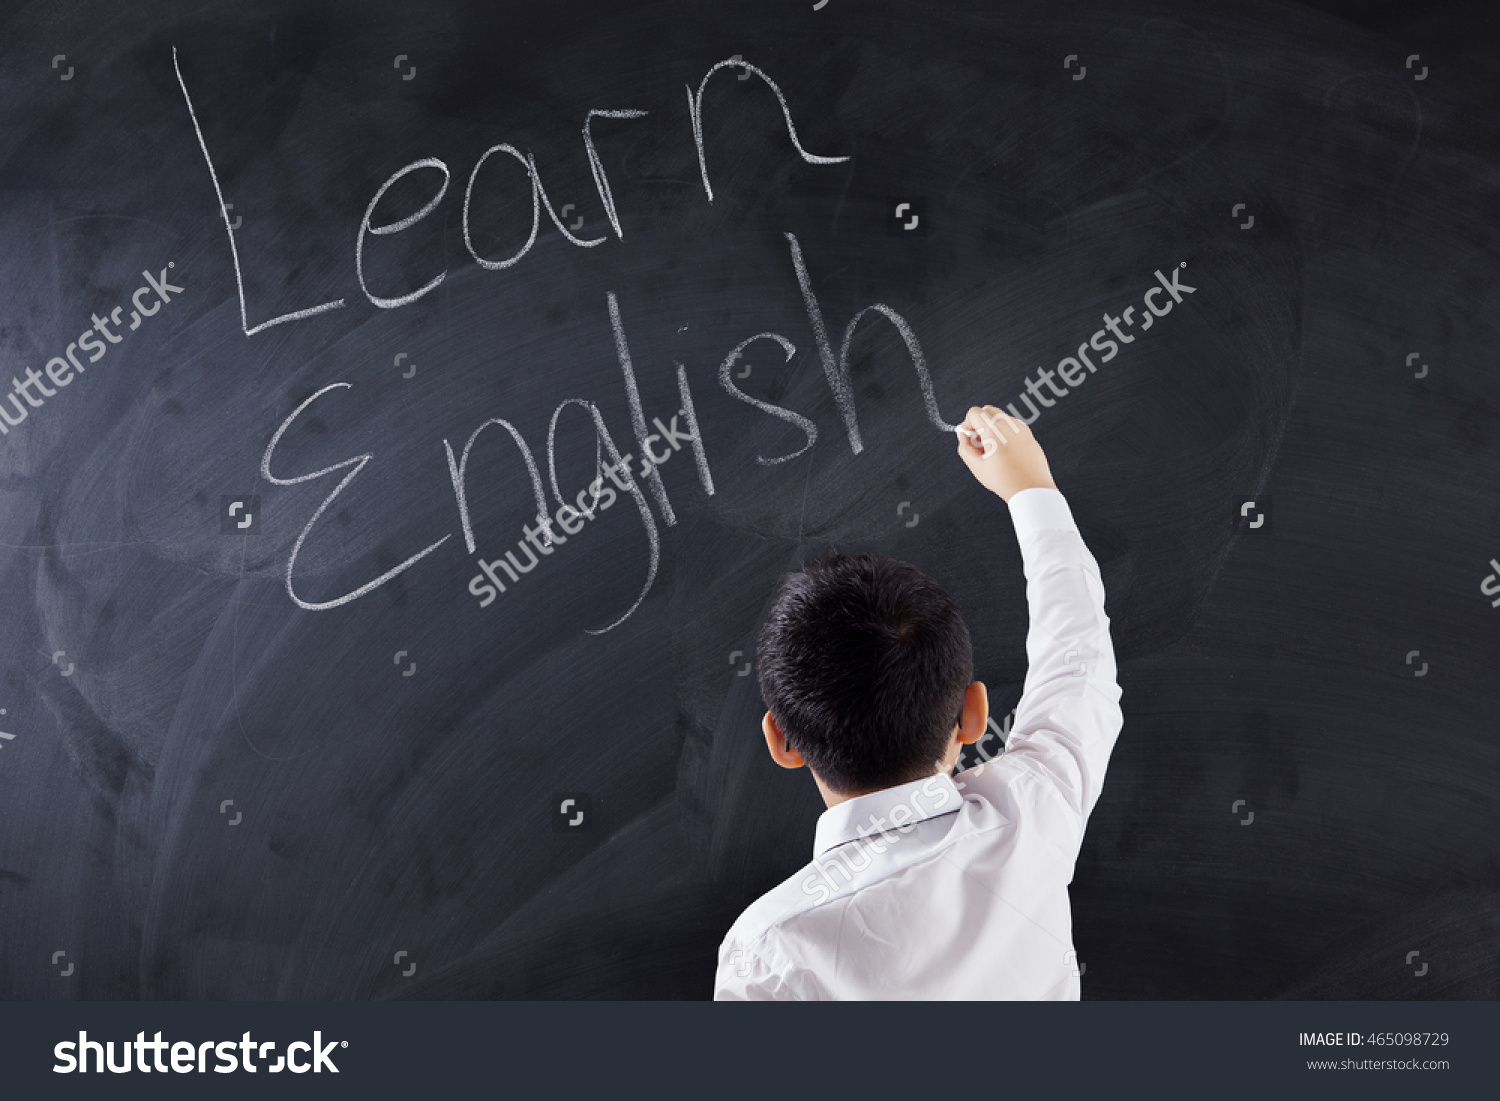 Cara mudah belajar bahasa Inggris - Menulis di papan tulis